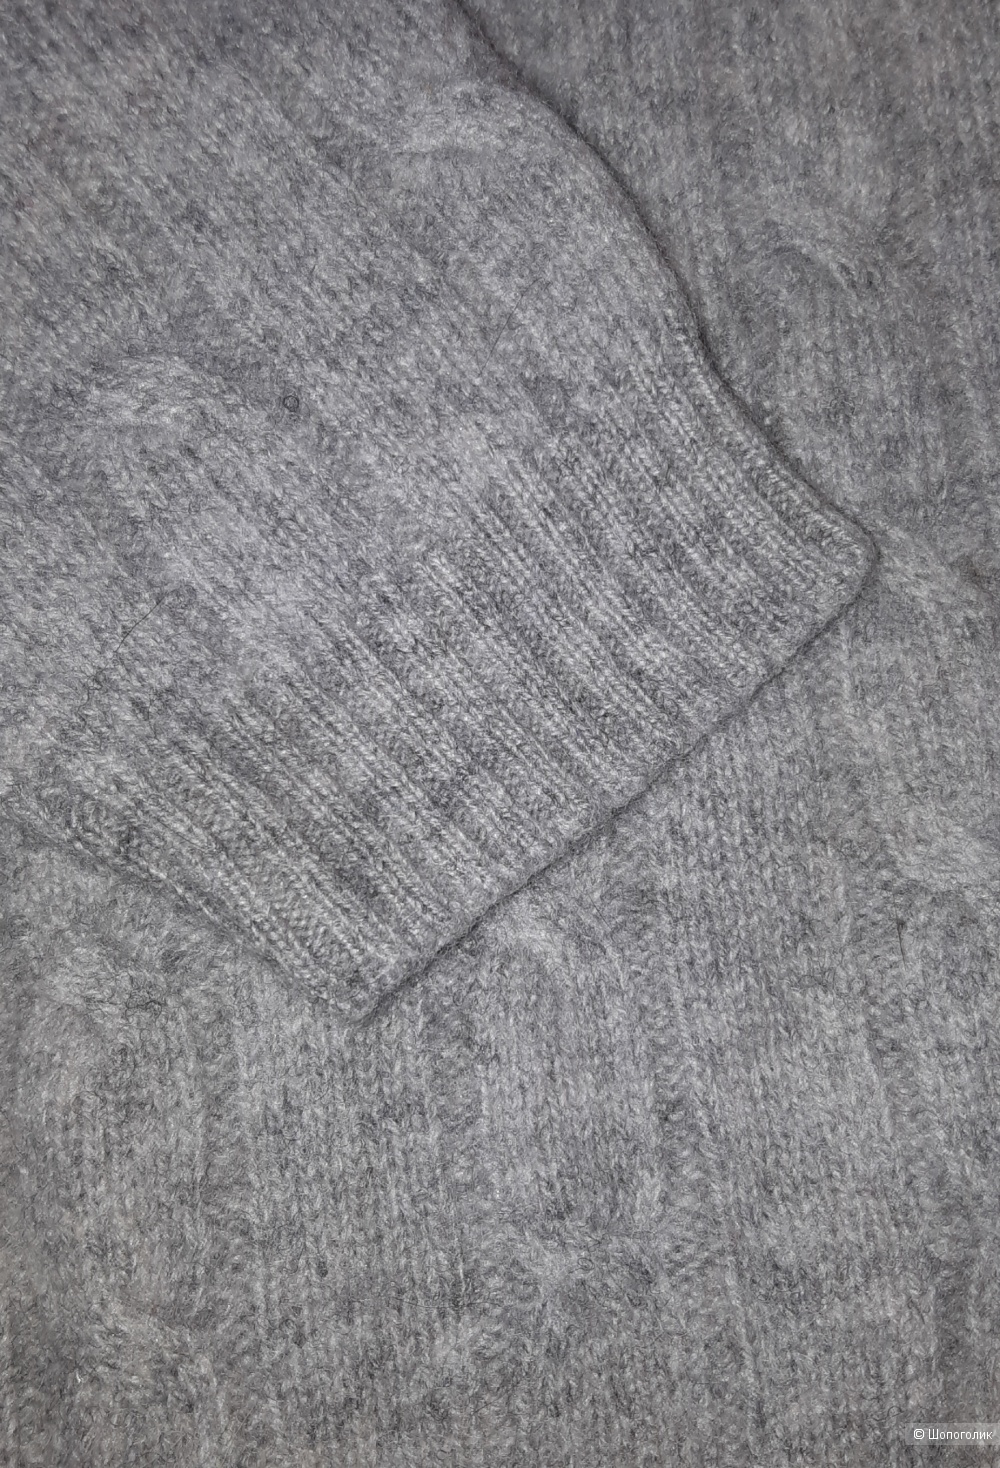 Шерстяной свитер iconic sport, размер m